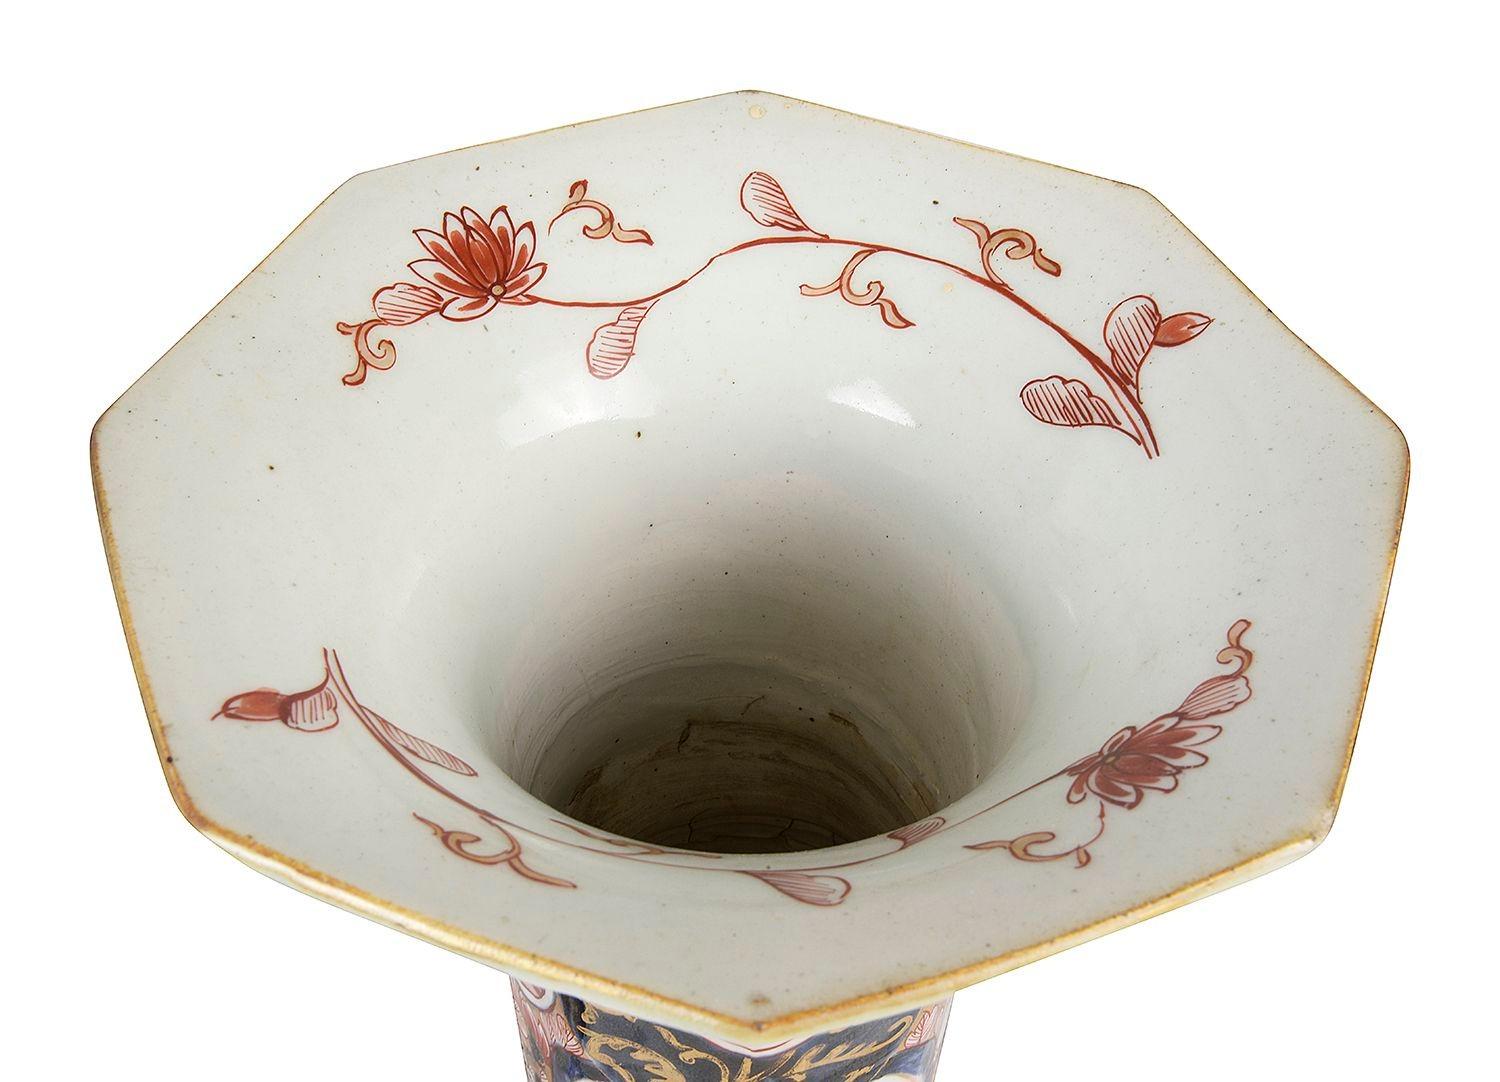 Paire de vases / lampes en porcelaine d'Arita Imari du 18e siècle. Chacun d'entre eux présente un magnifique fond bleu et rouge, un motif classique et un décor de feuillage en volutes, ainsi que des panneaux peints à la main représentant des oiseaux